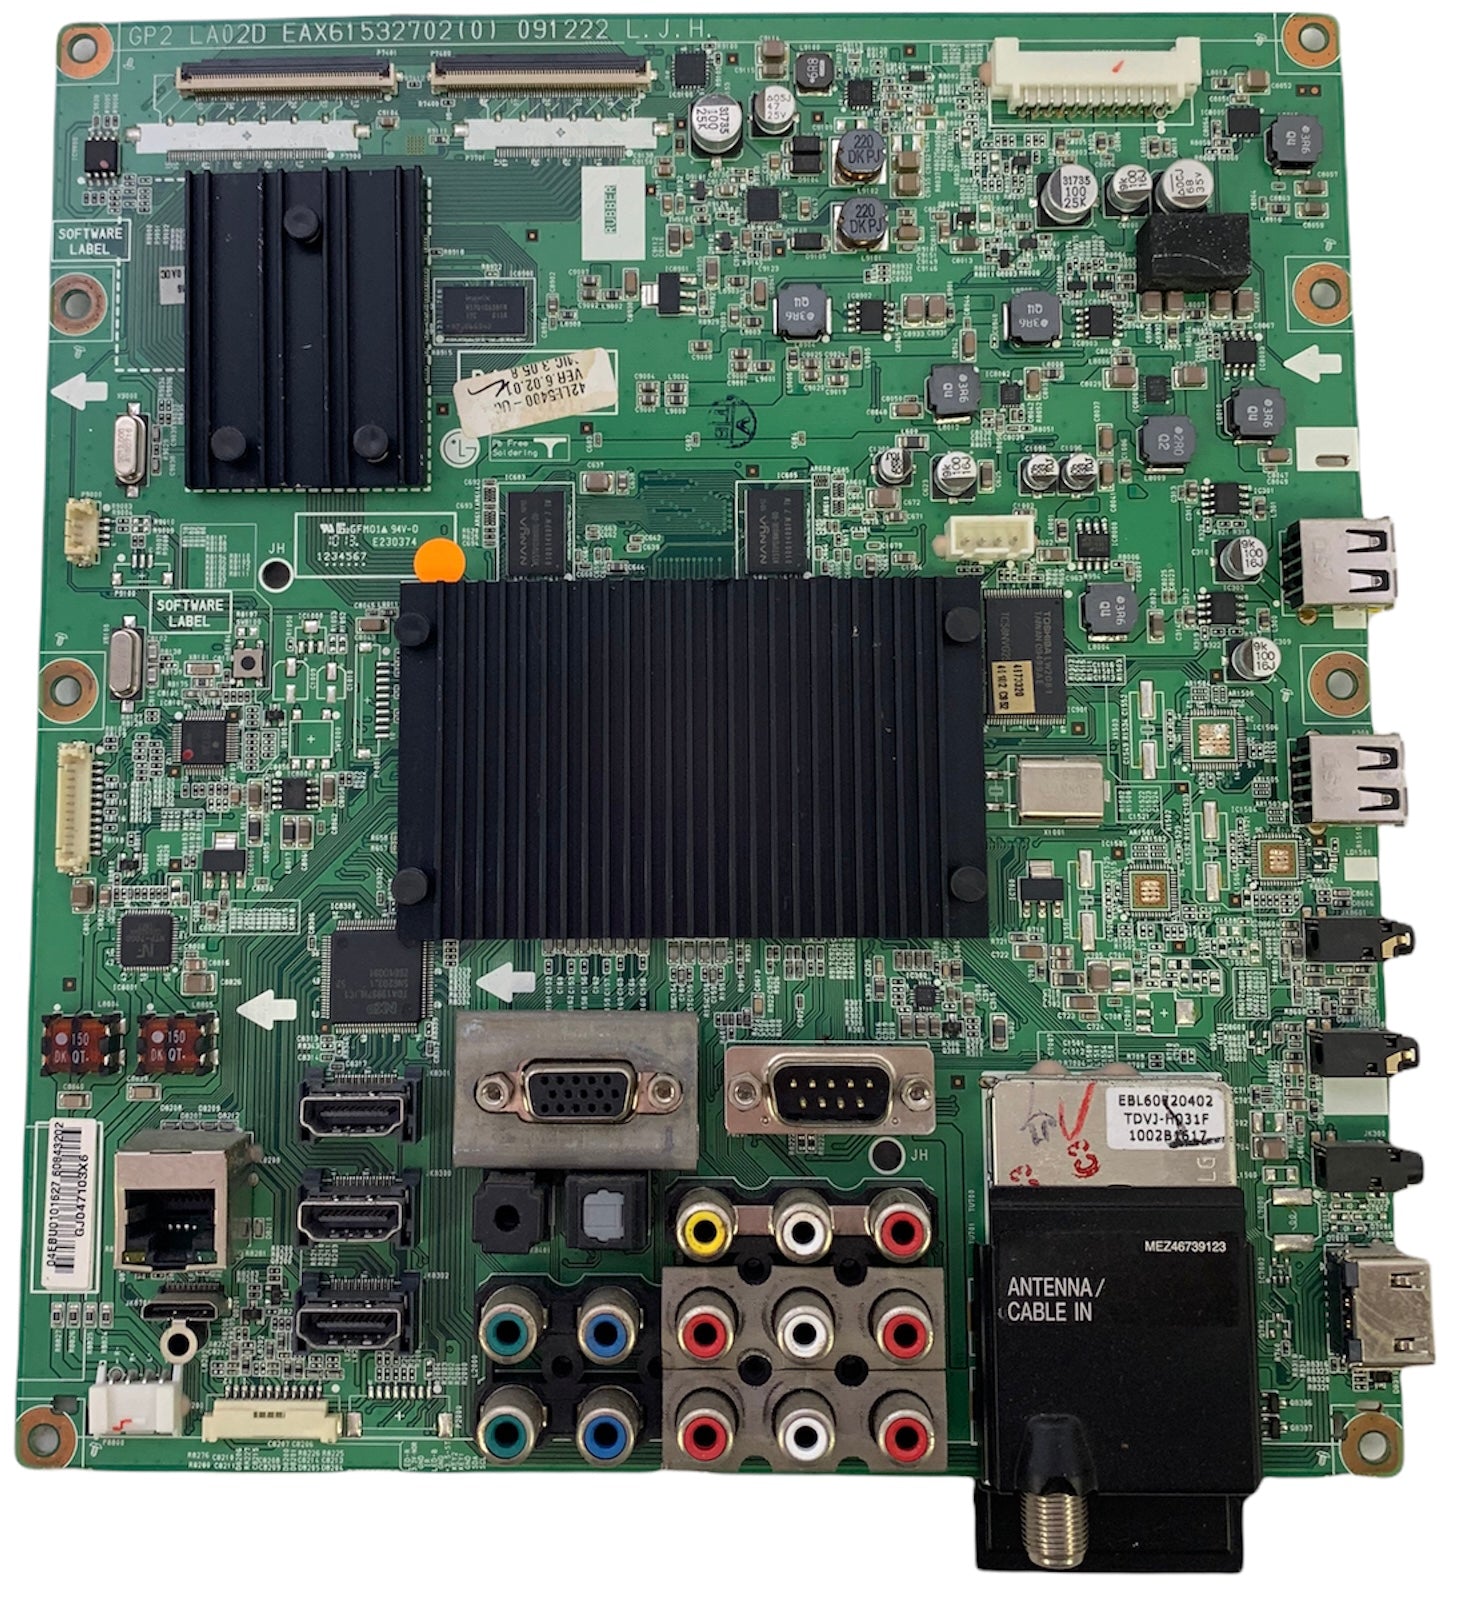 LG EBR66043801 (EAX61532702(0)) Main Board for 42LE5400-UC